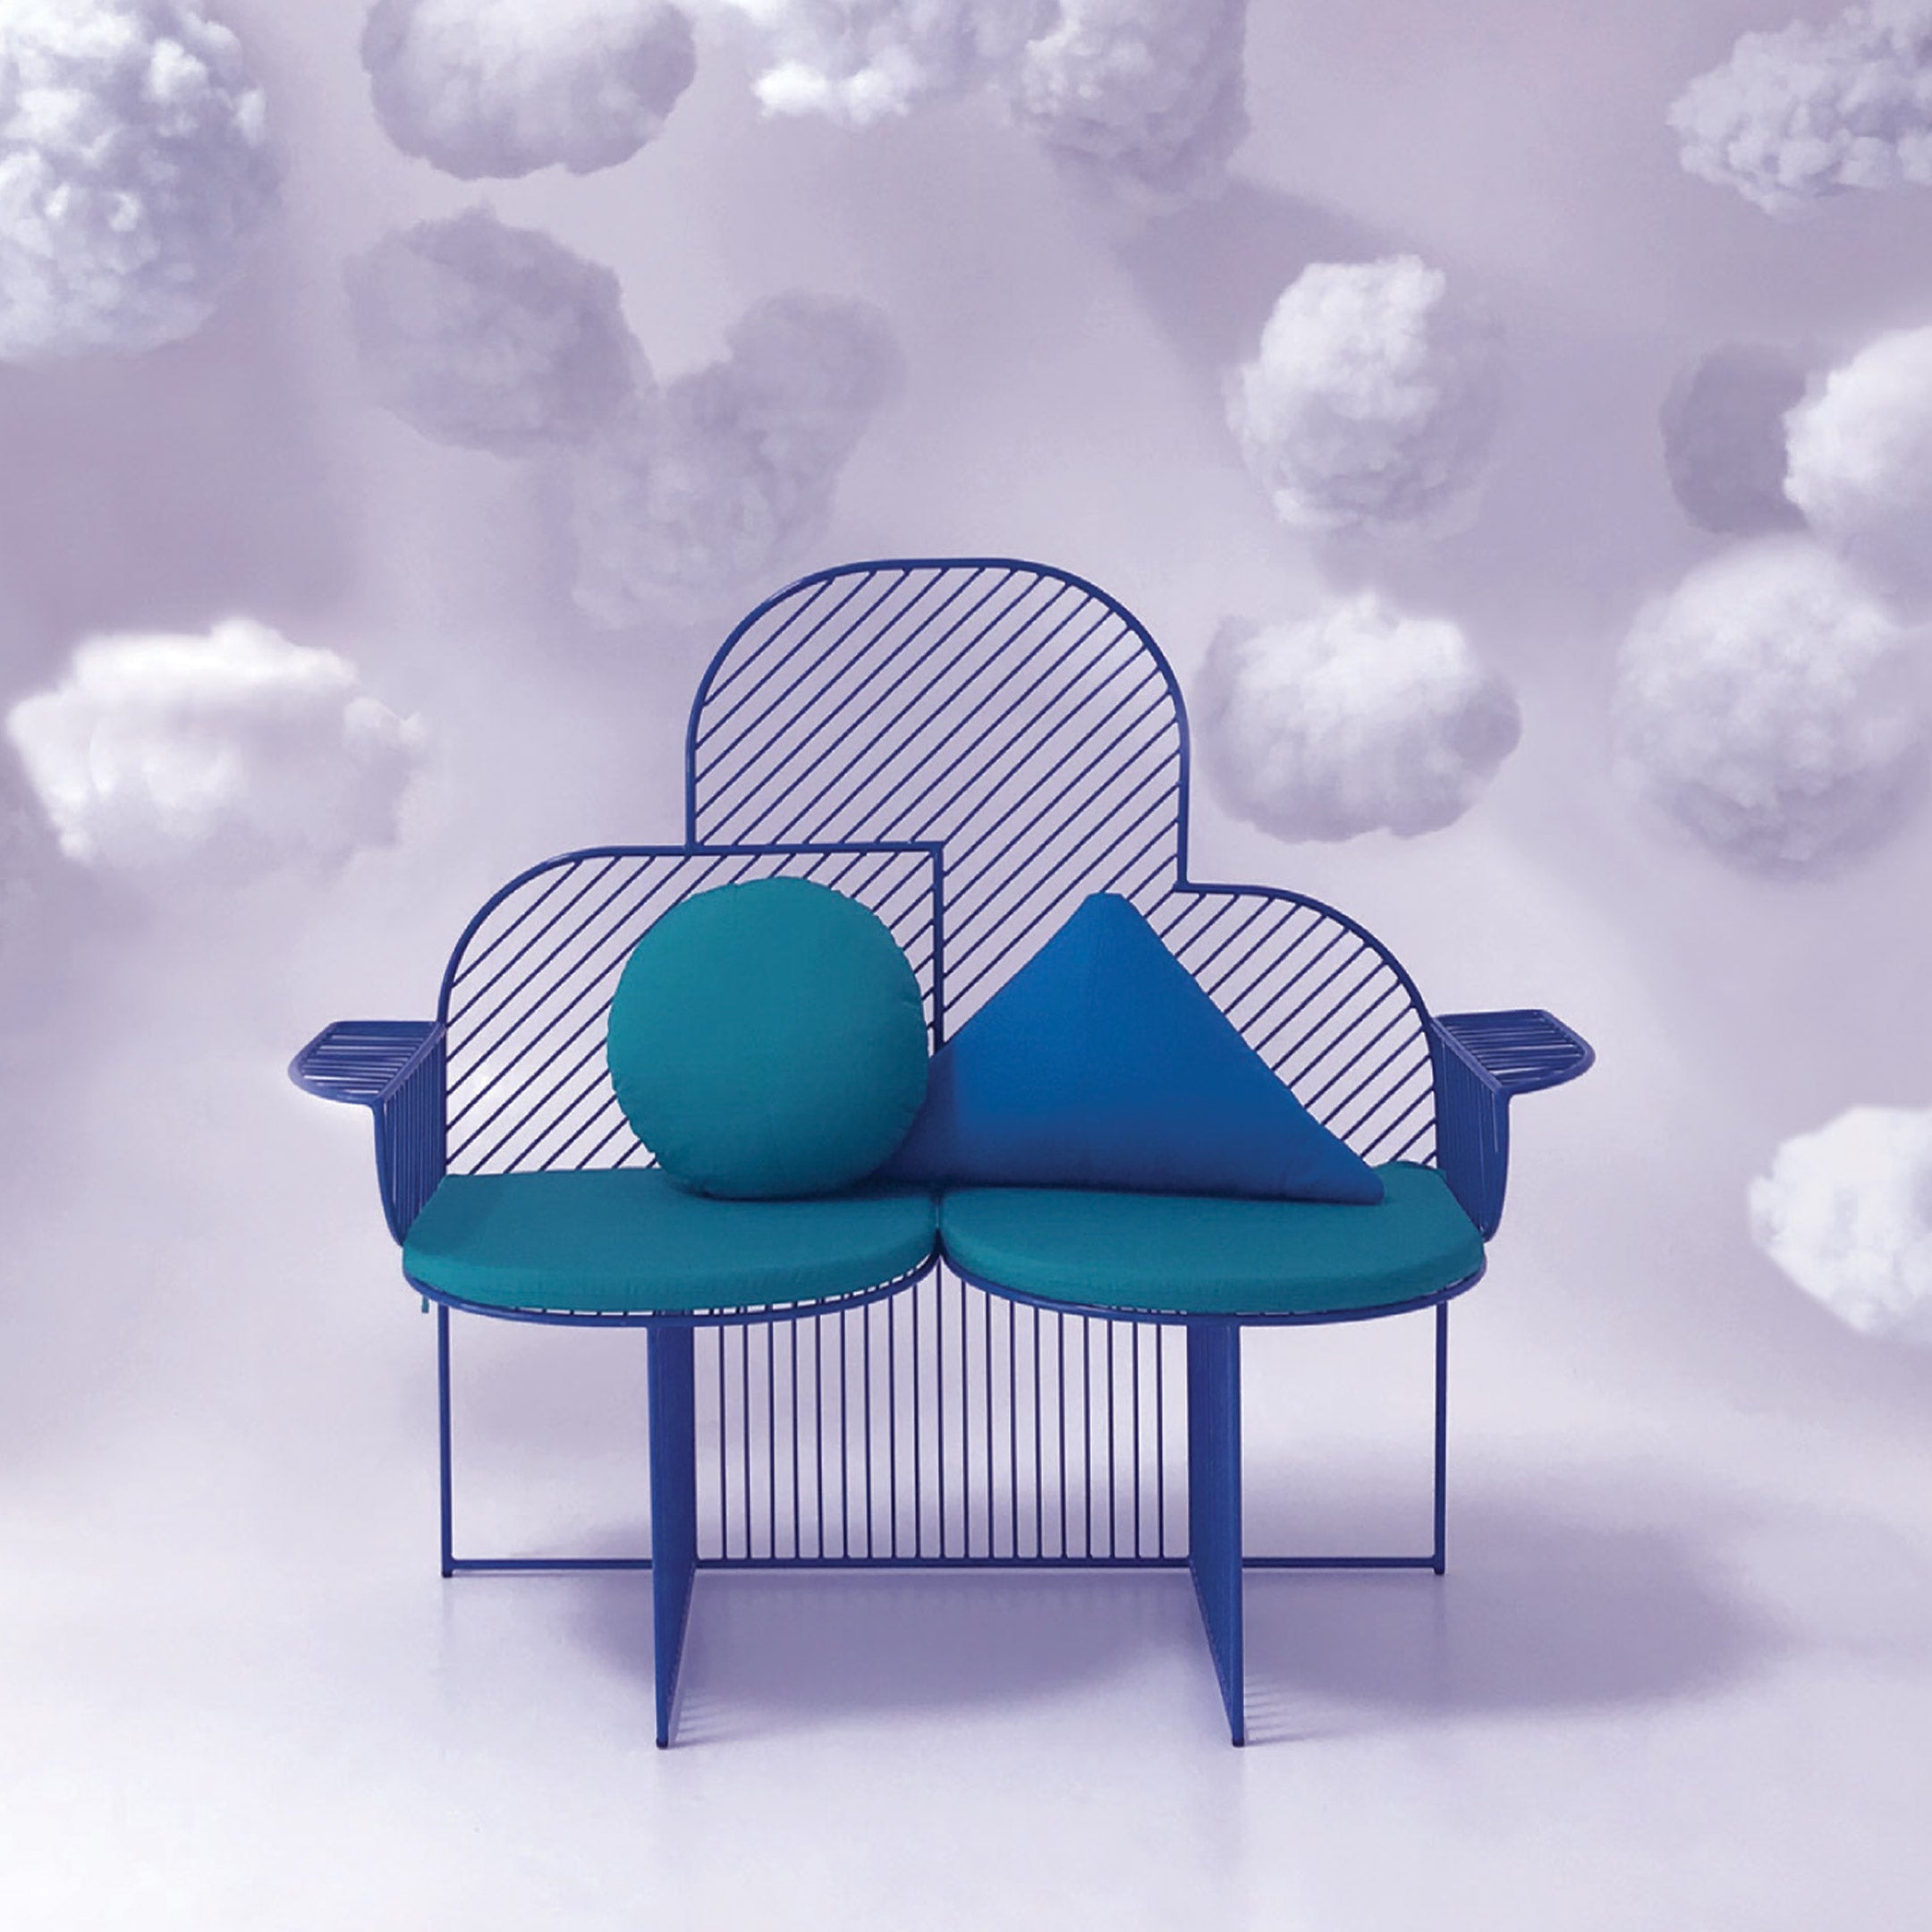 Cloud Bench - Indoor & Outdoor Lounge Chair